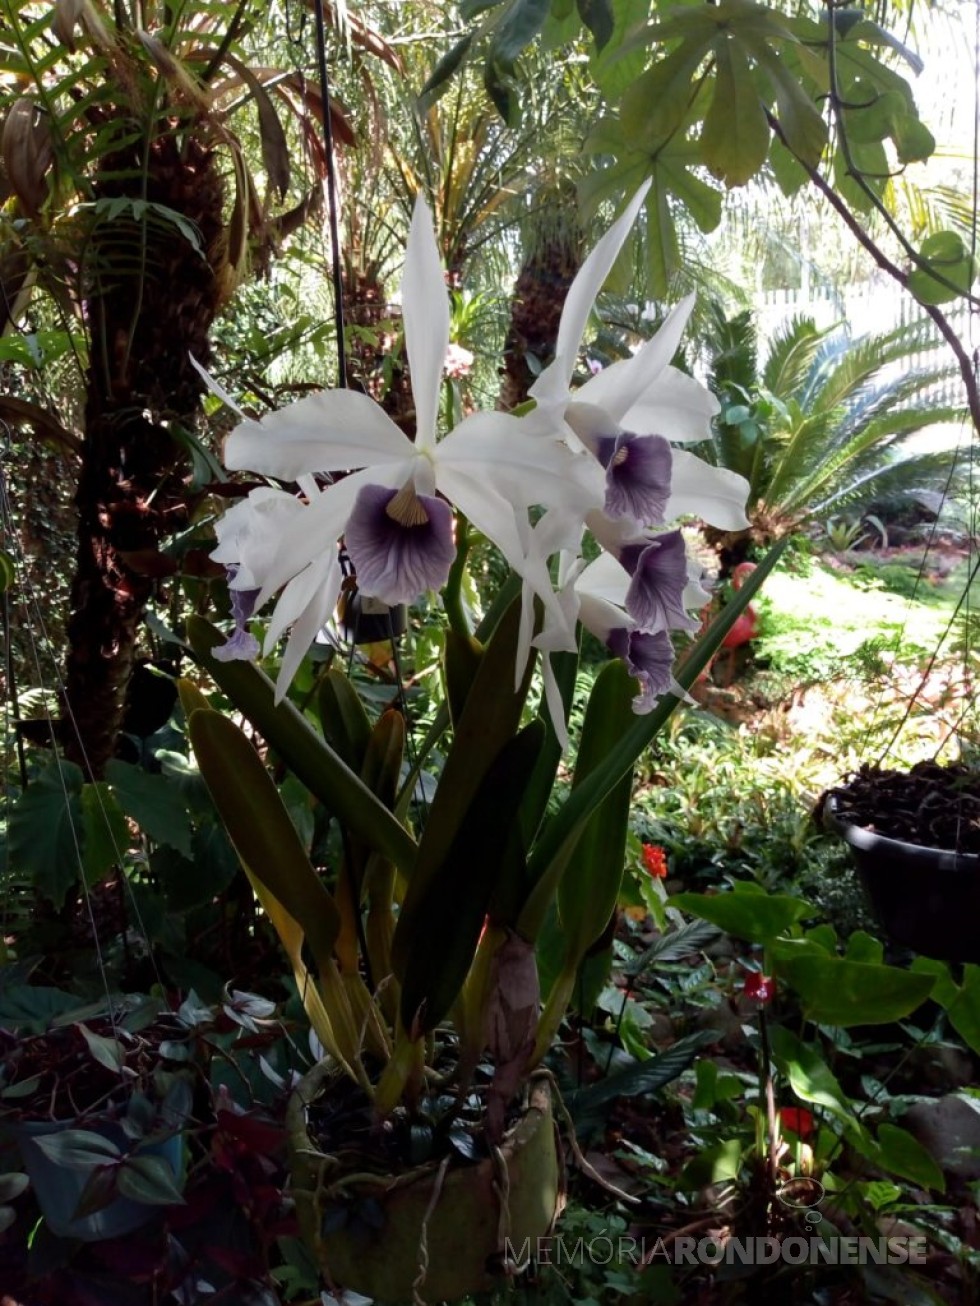 || Esplendor de Primavera: orquídea Laelia purpurata var. werkhauserii no jardim de Elenita Salete Foppa Viteck, esposa do historiógrafo rondonense Harto Viteck.
Imagem: Acervo pessoal - FOTO 8 - 